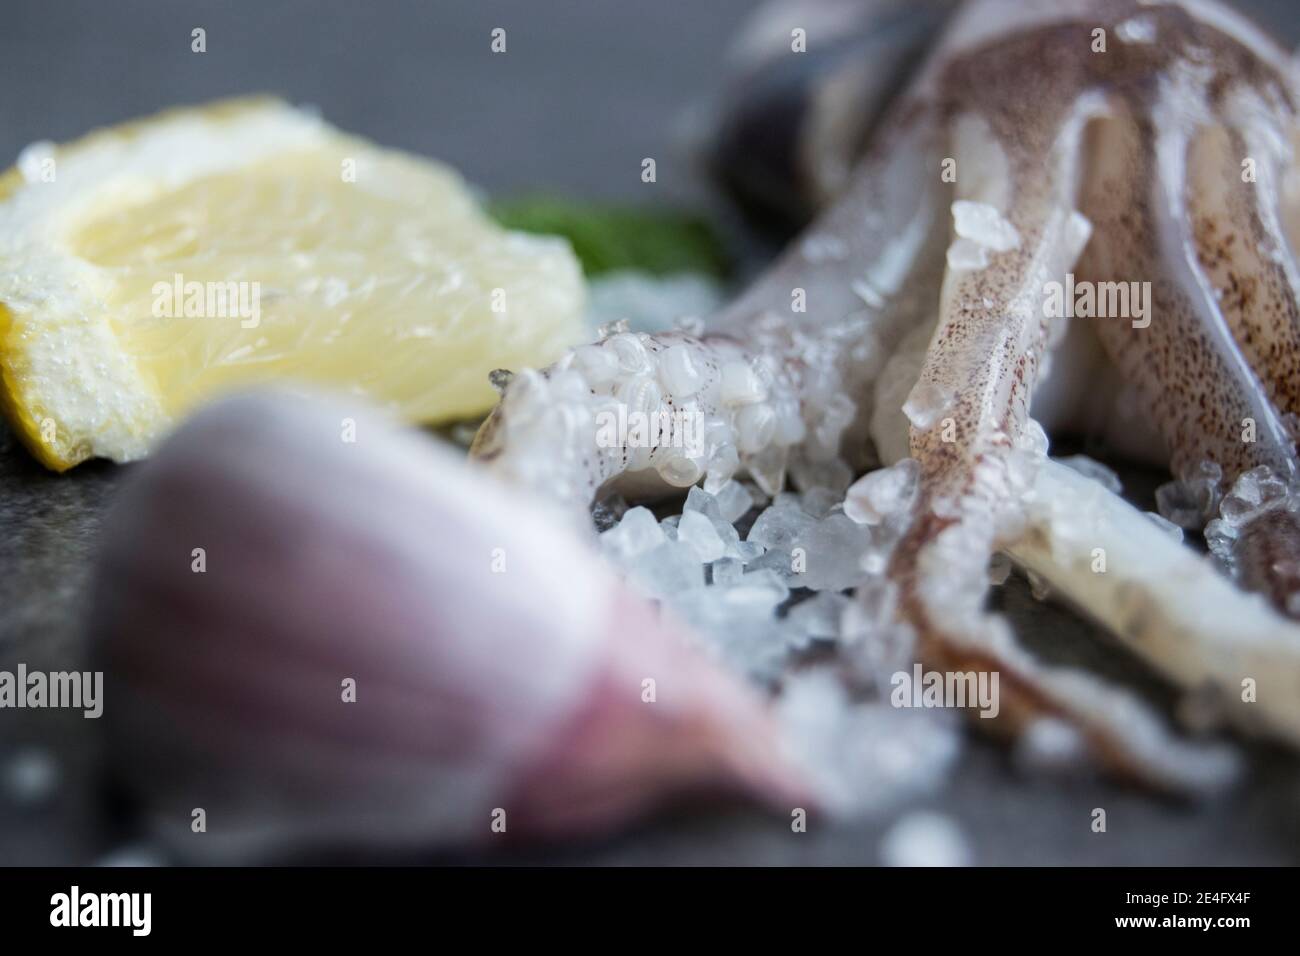 Tintenfisch Tentakeln auf einer Schieferplatte mit Zitrone und Knoblauch Stockfoto